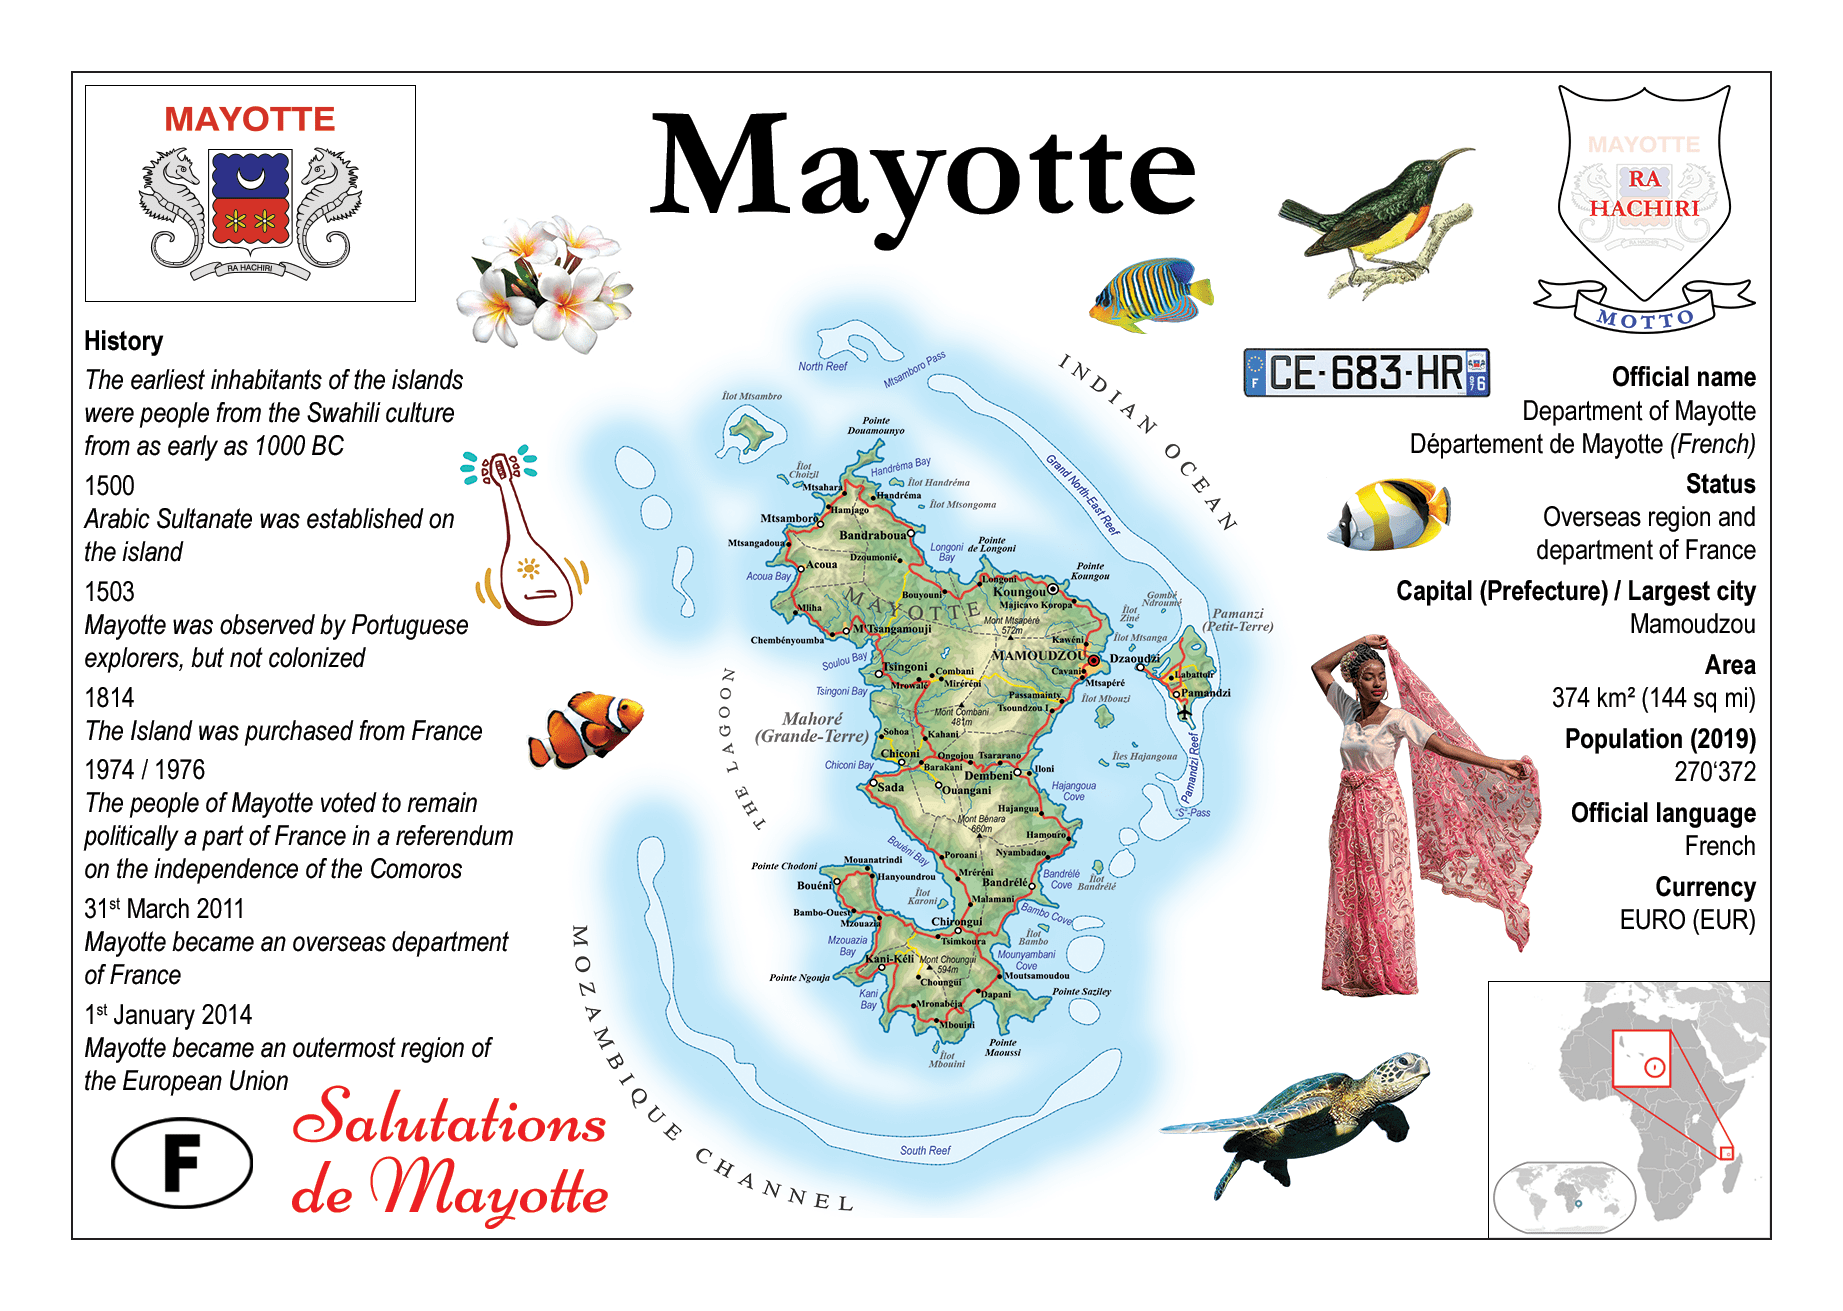 https://postcardsmarket.com/cdn/shop/products/147_-_MOTW_-_Mayotte_-_Front.png?v=1608572271